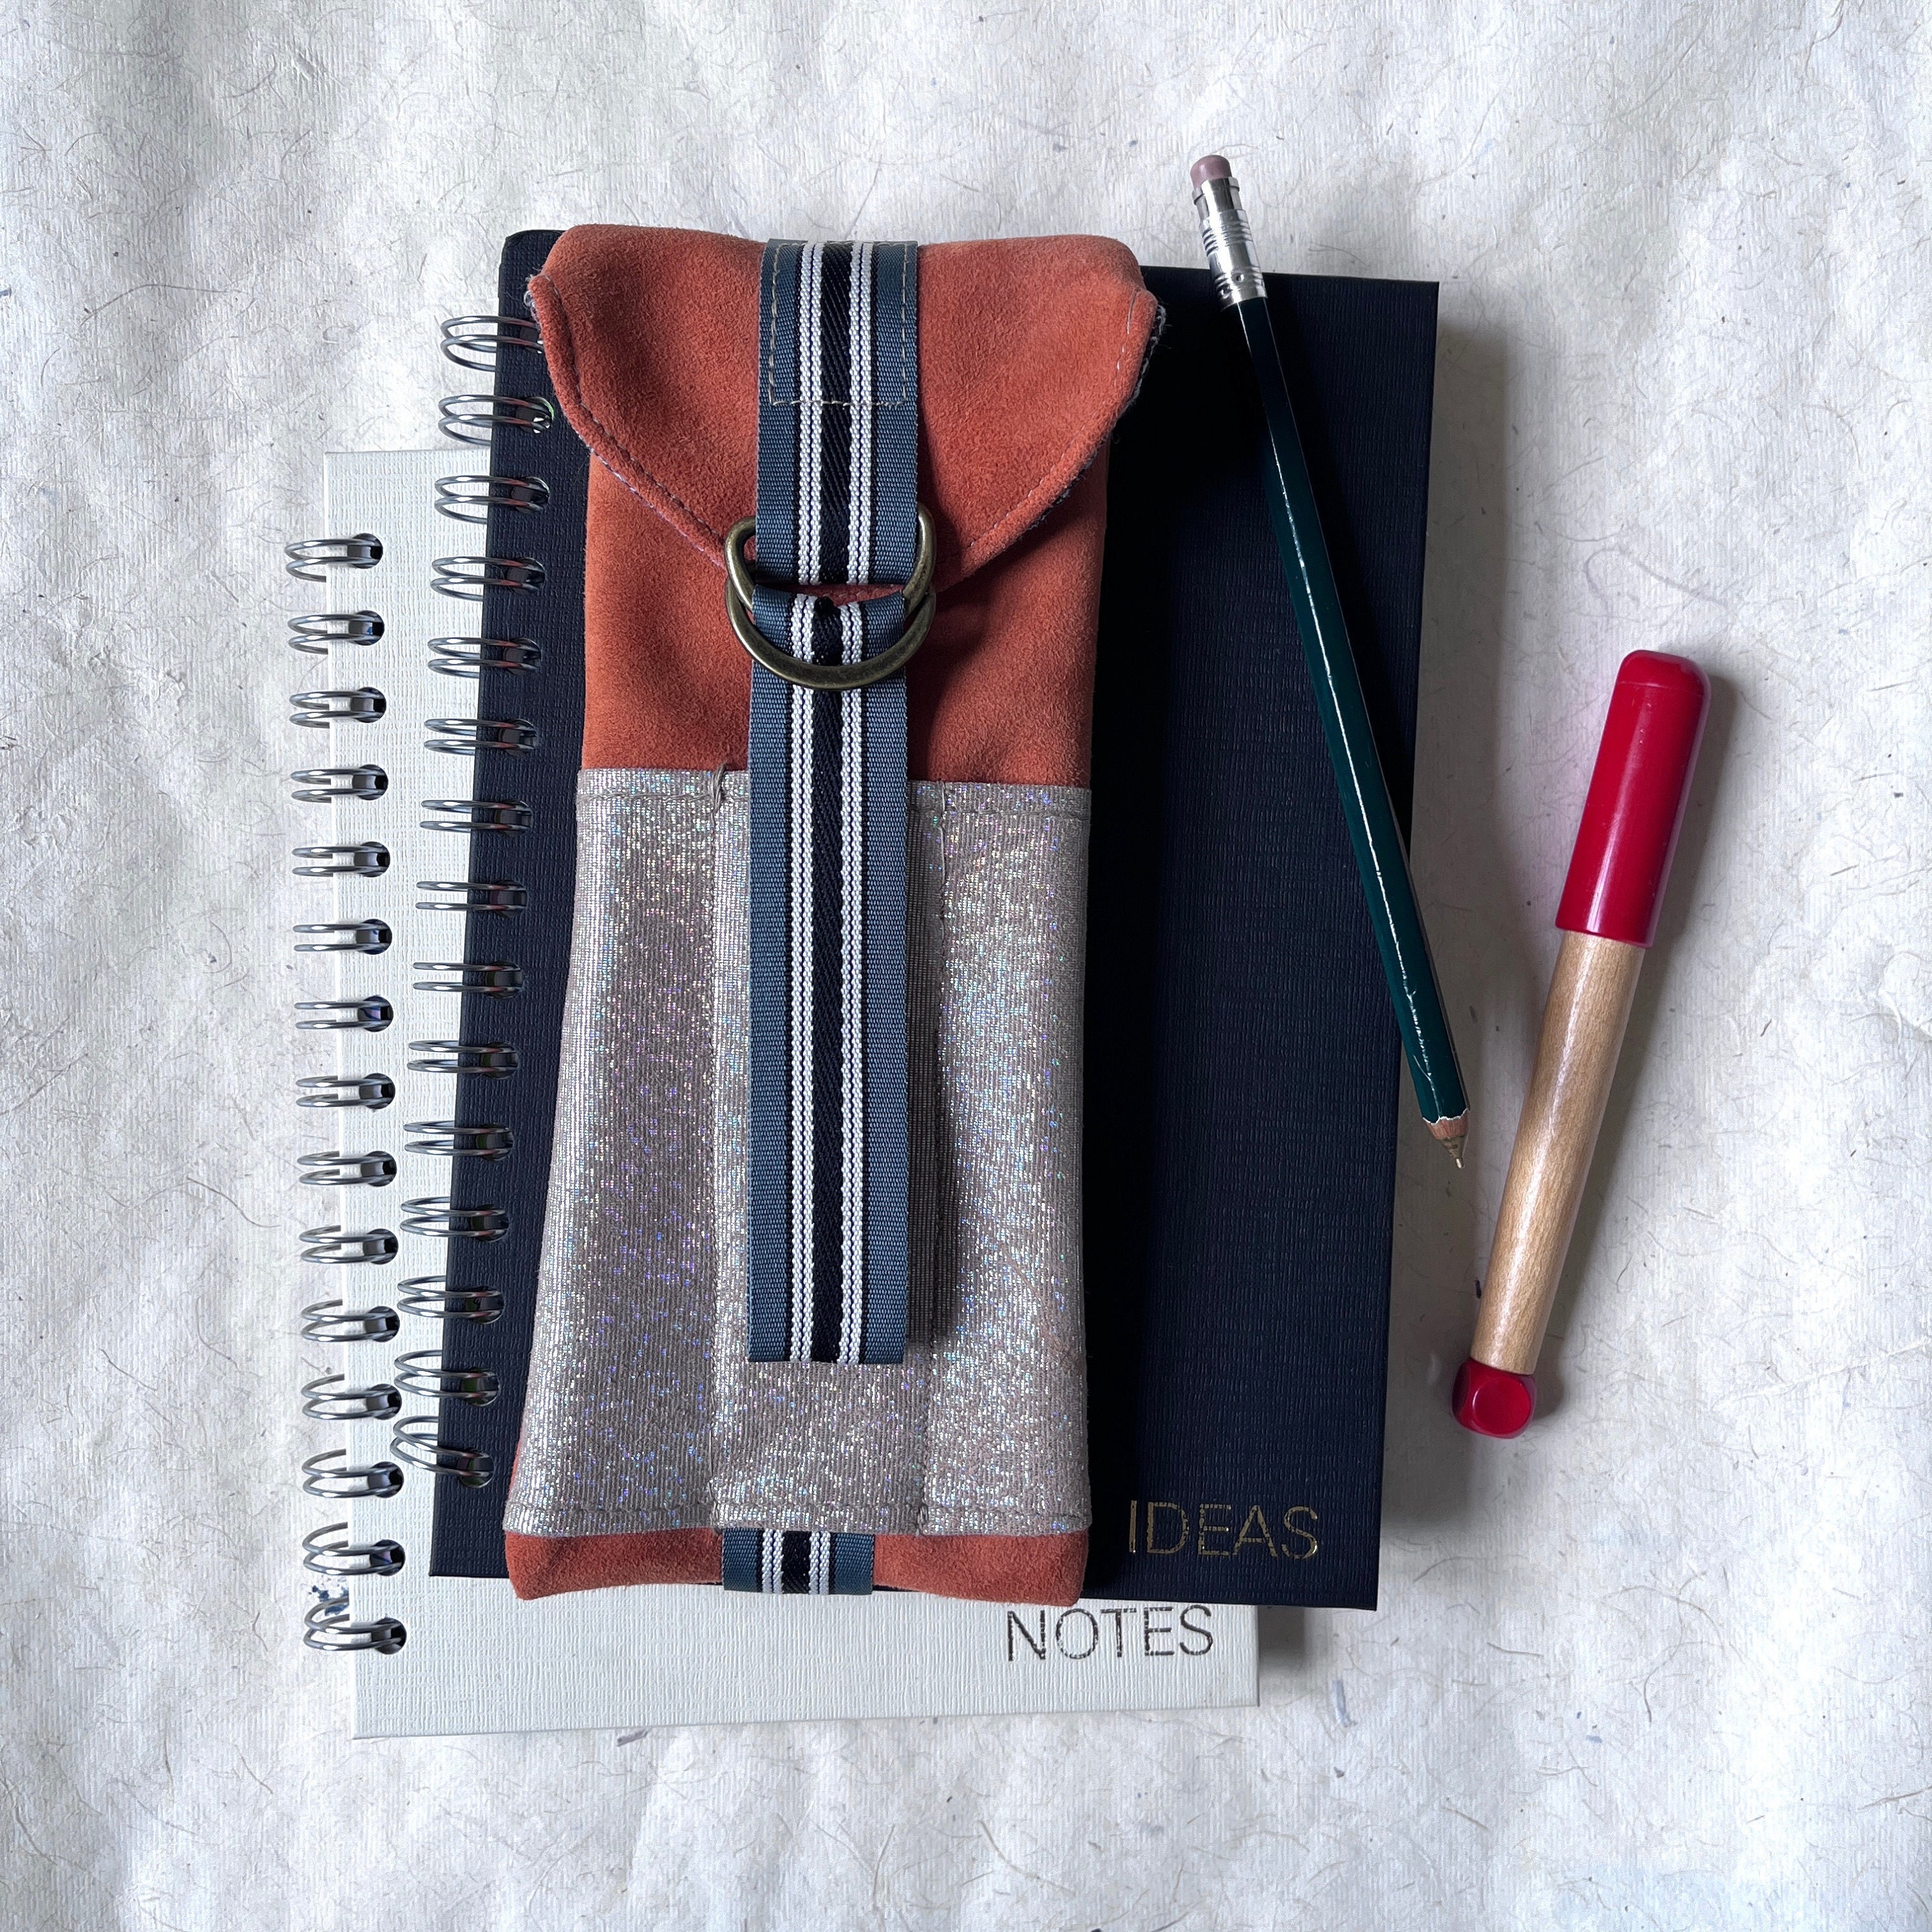 DIY Pen Holder for Notebook - Create Whimsy